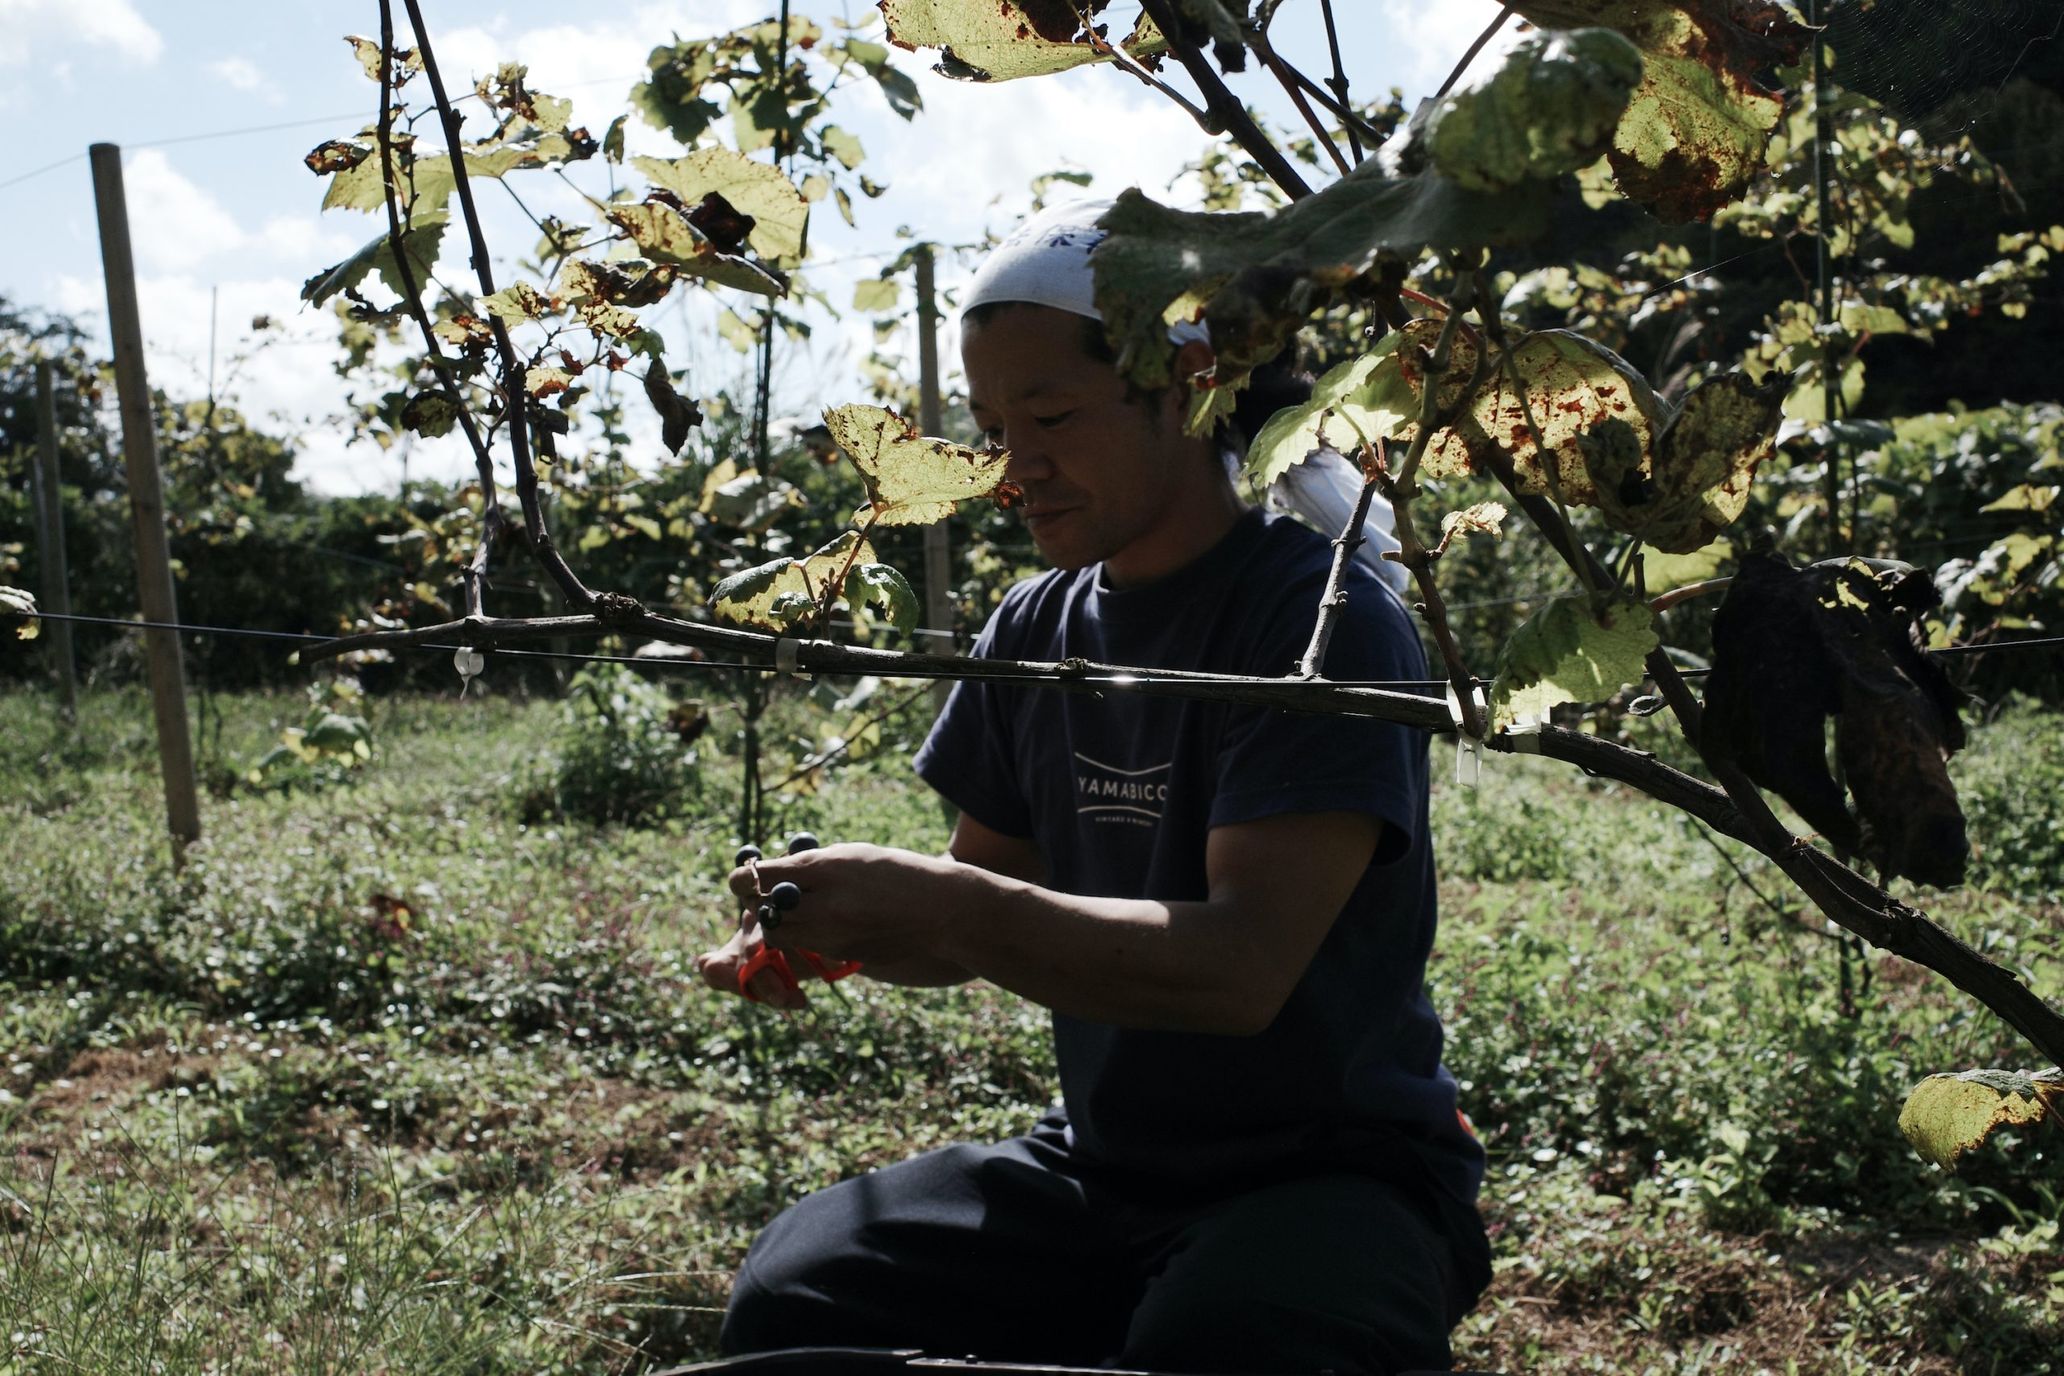 羽黒の山伏、岡山の過疎地でナチュラルワインをつくる ―収穫編―